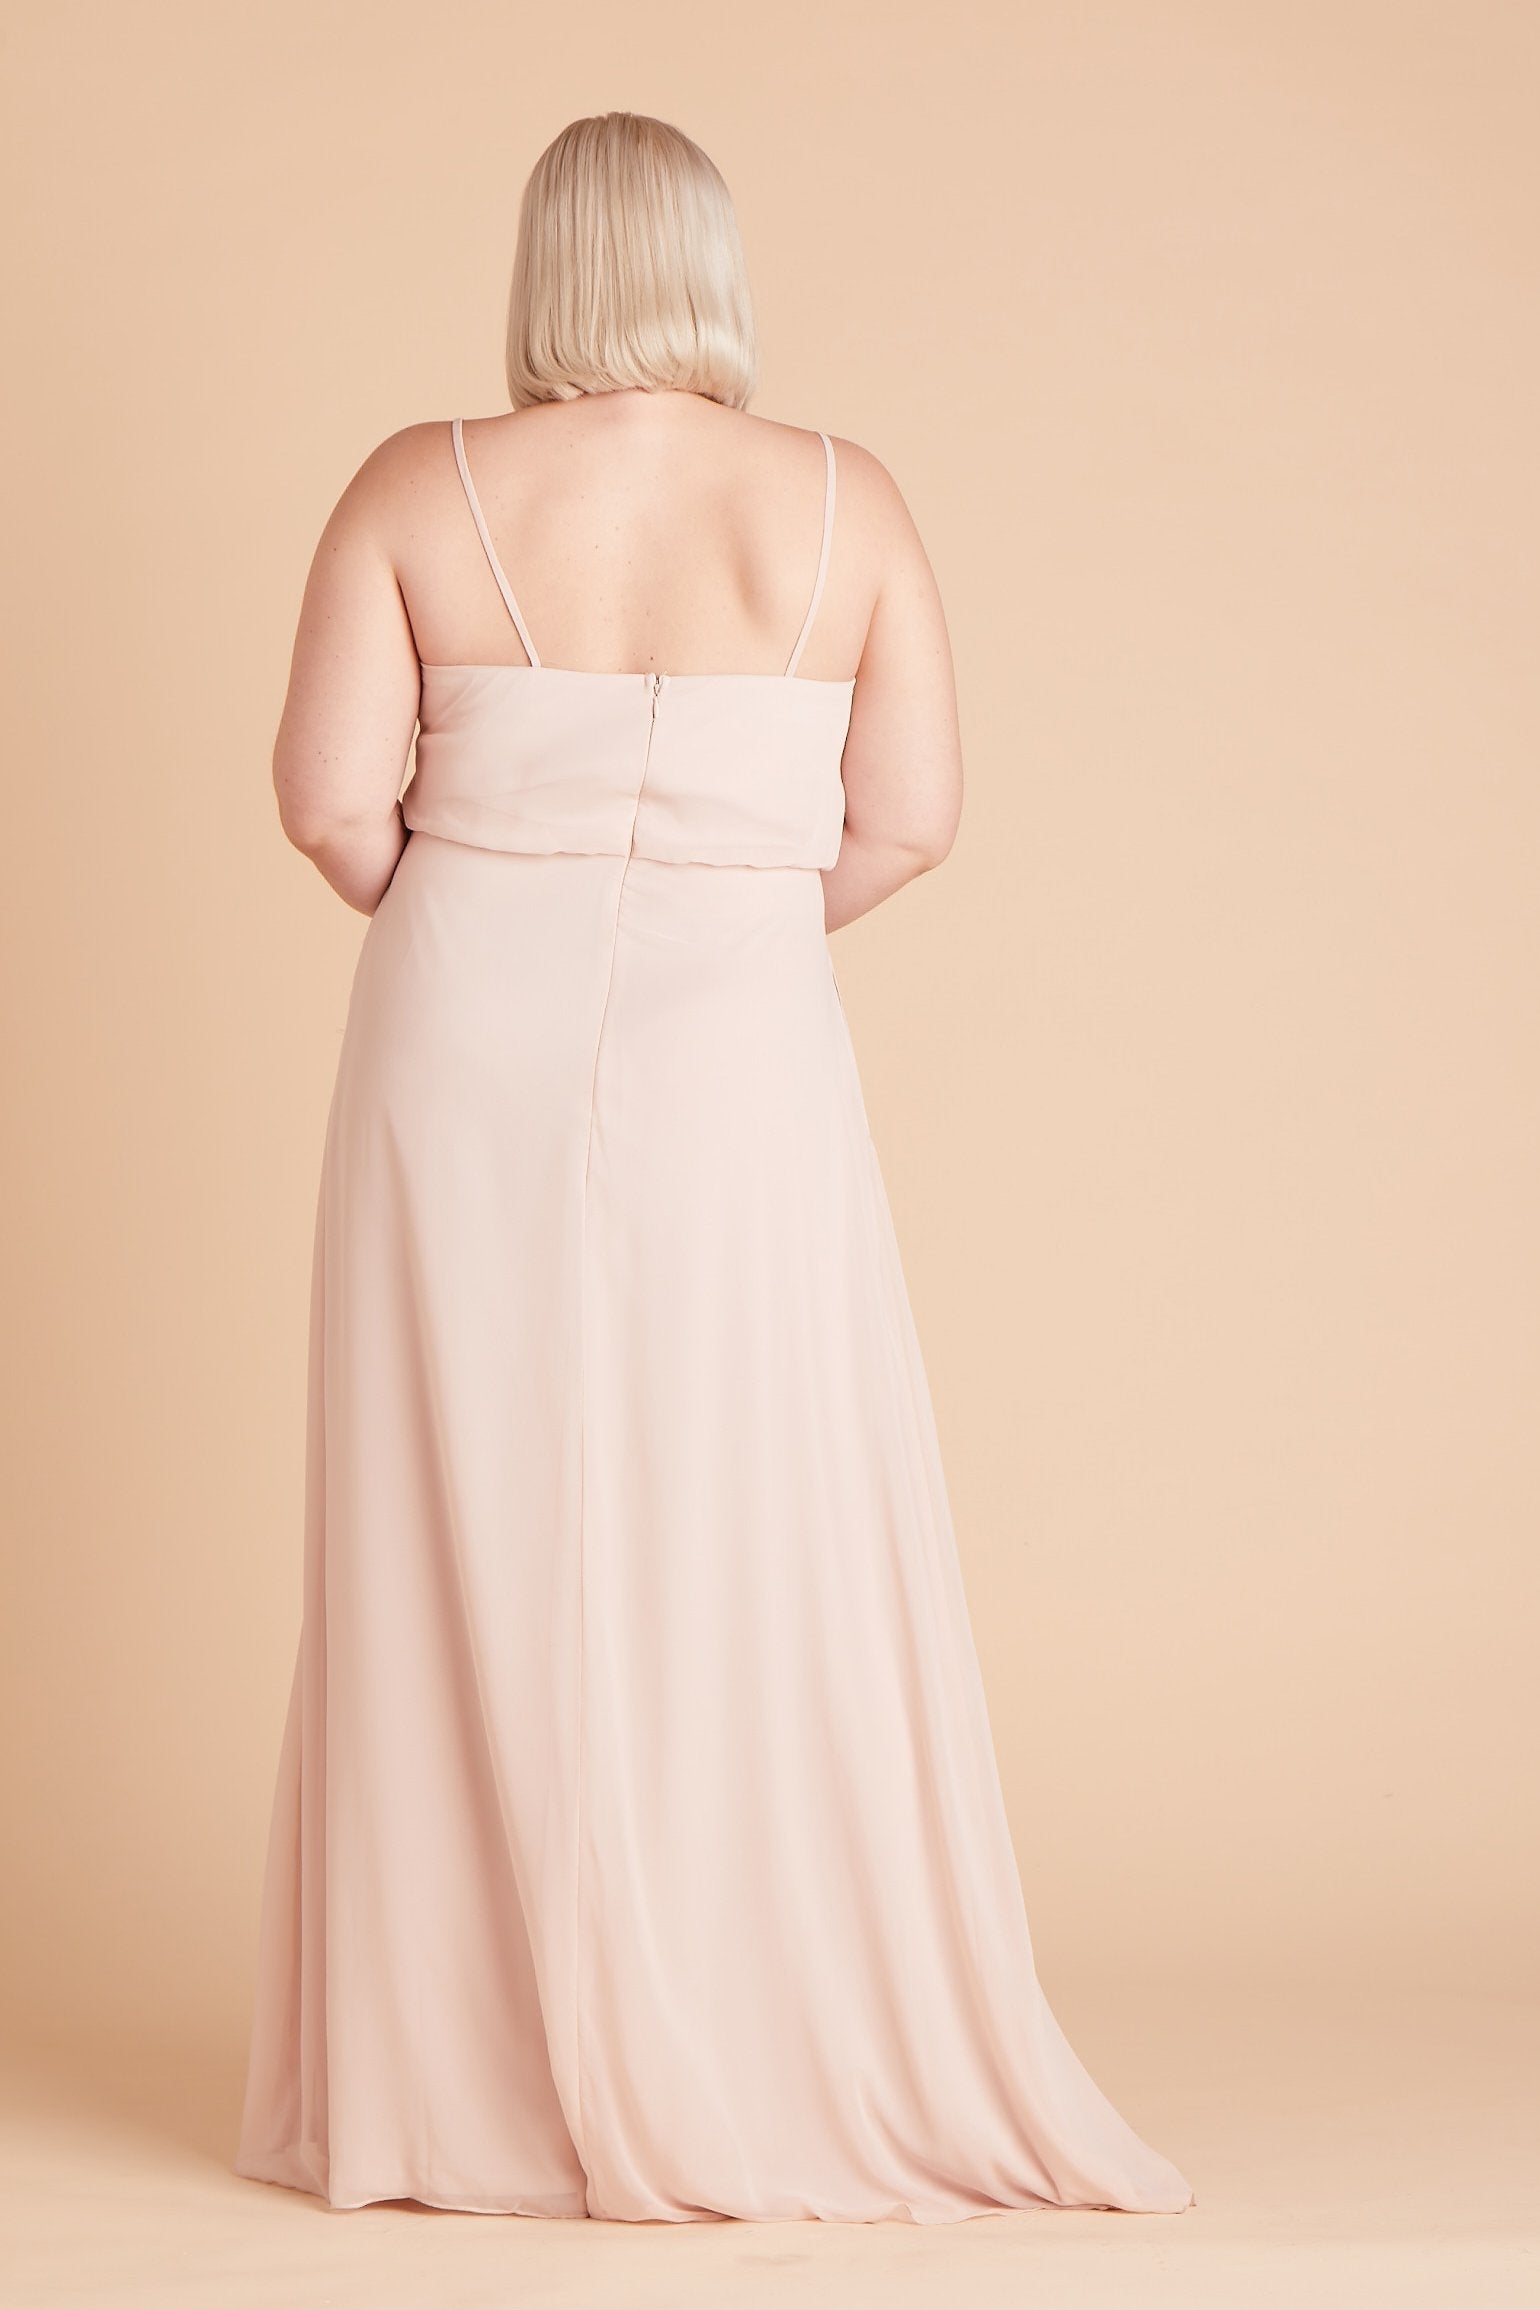 Gwennie plus size bridesmaid dress in pale blush chiffon by Birdy Grey, back view